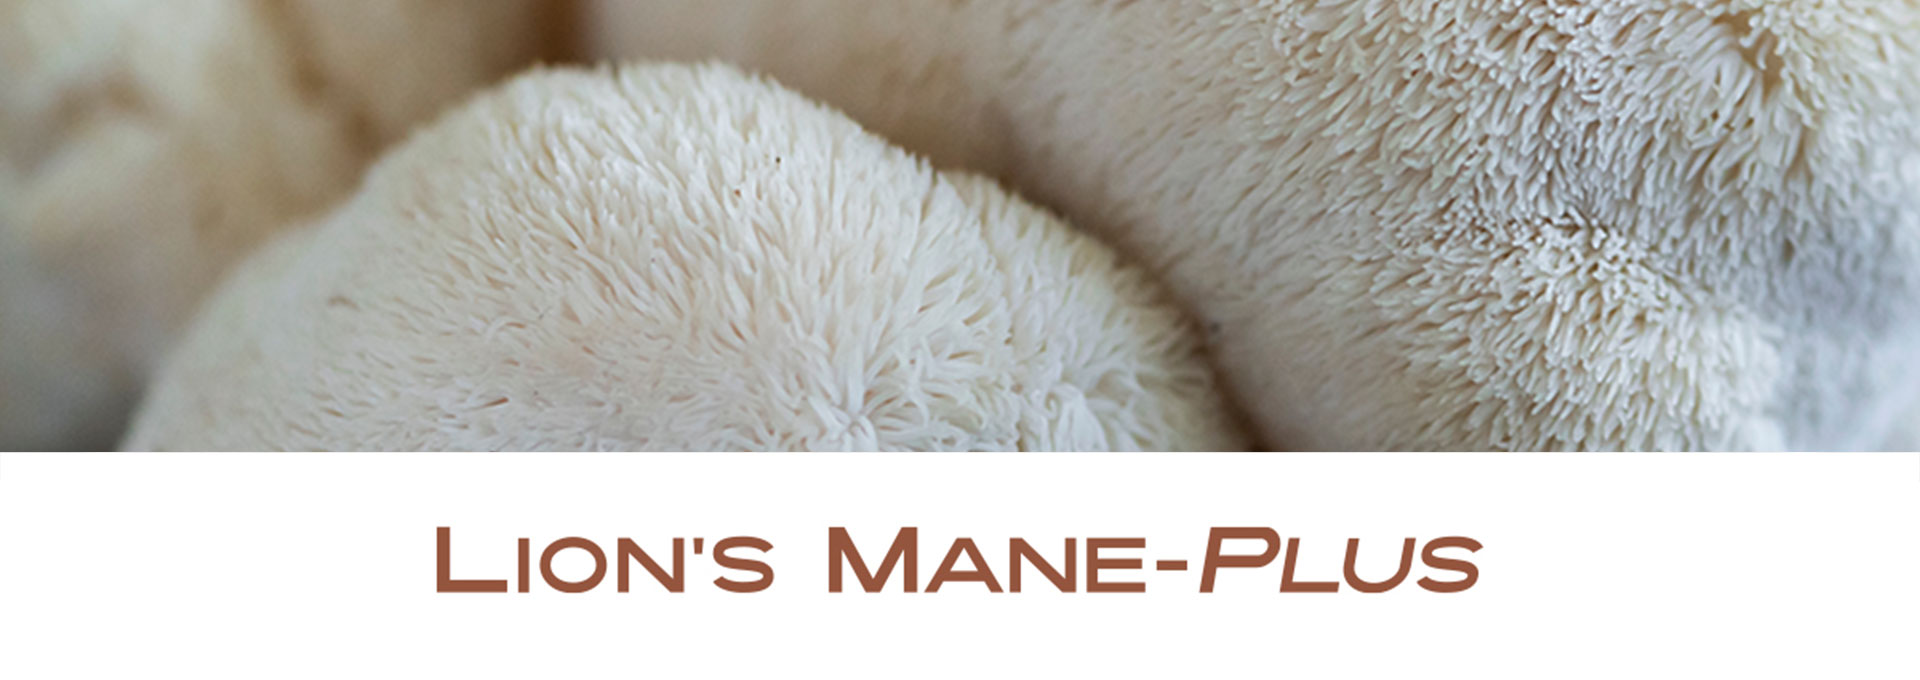 Lions-Mane-Plus banner